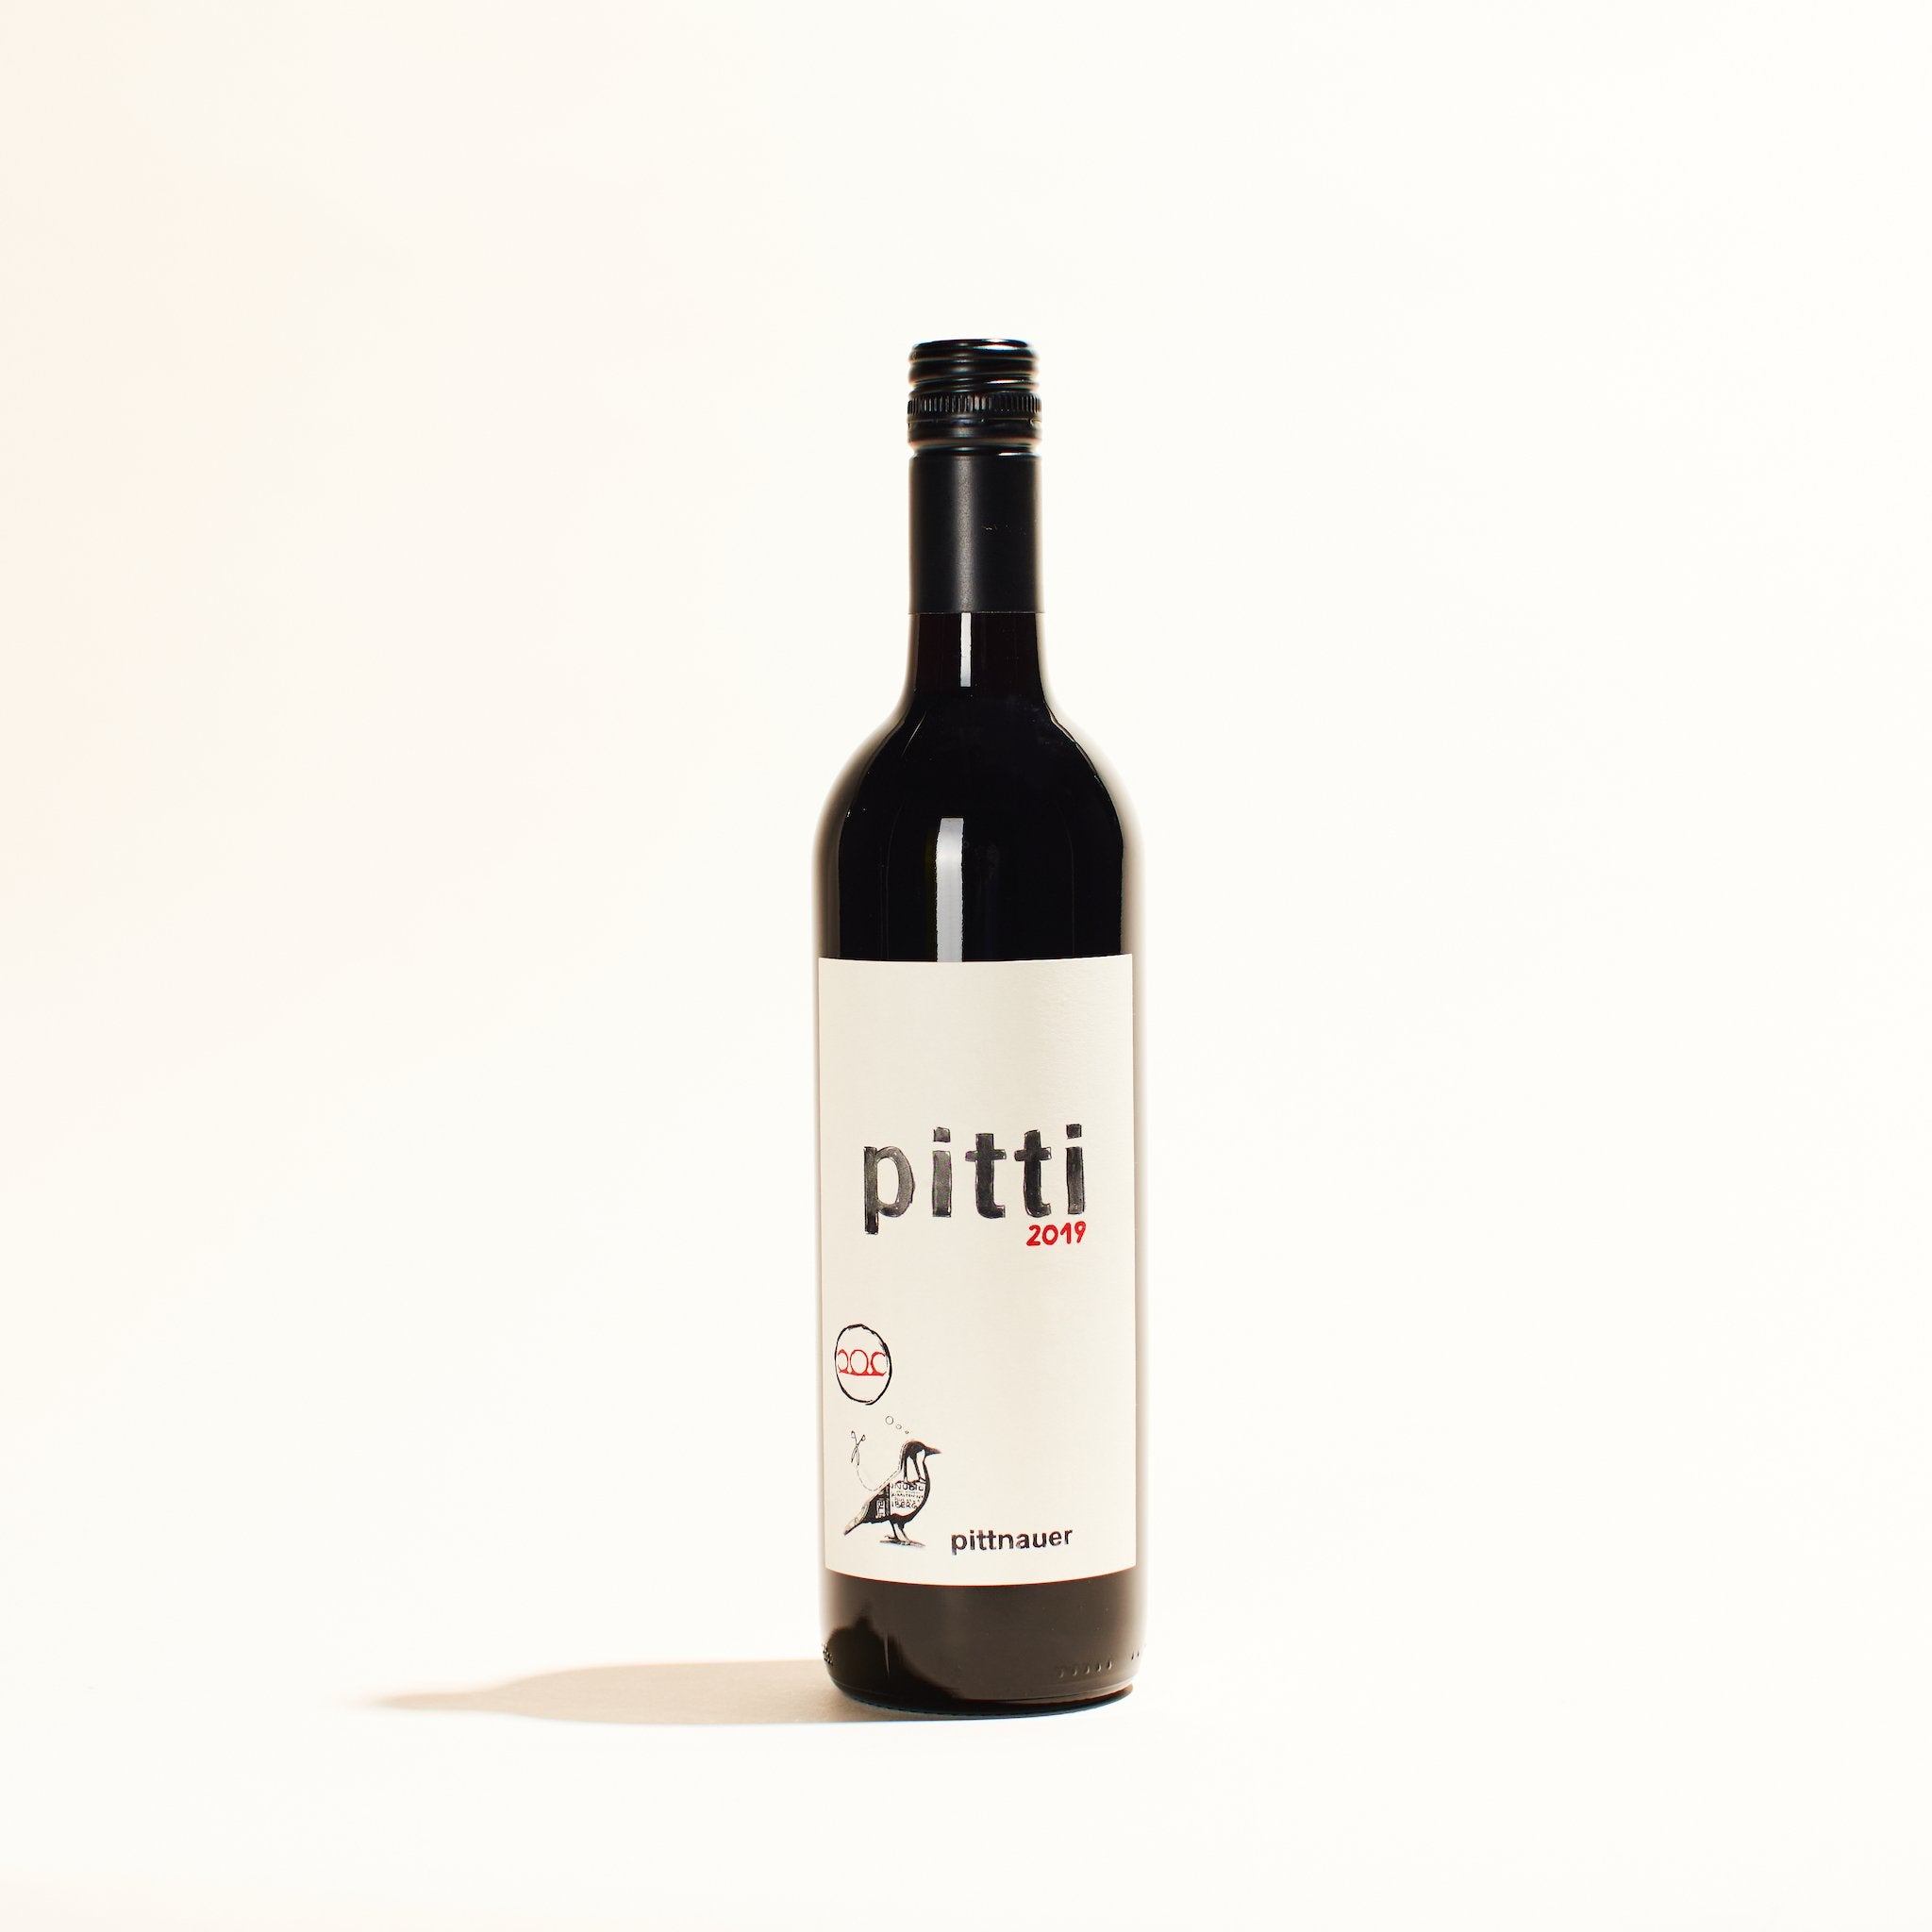 pitti by weingut pittnauer natural red wine burgenland austria